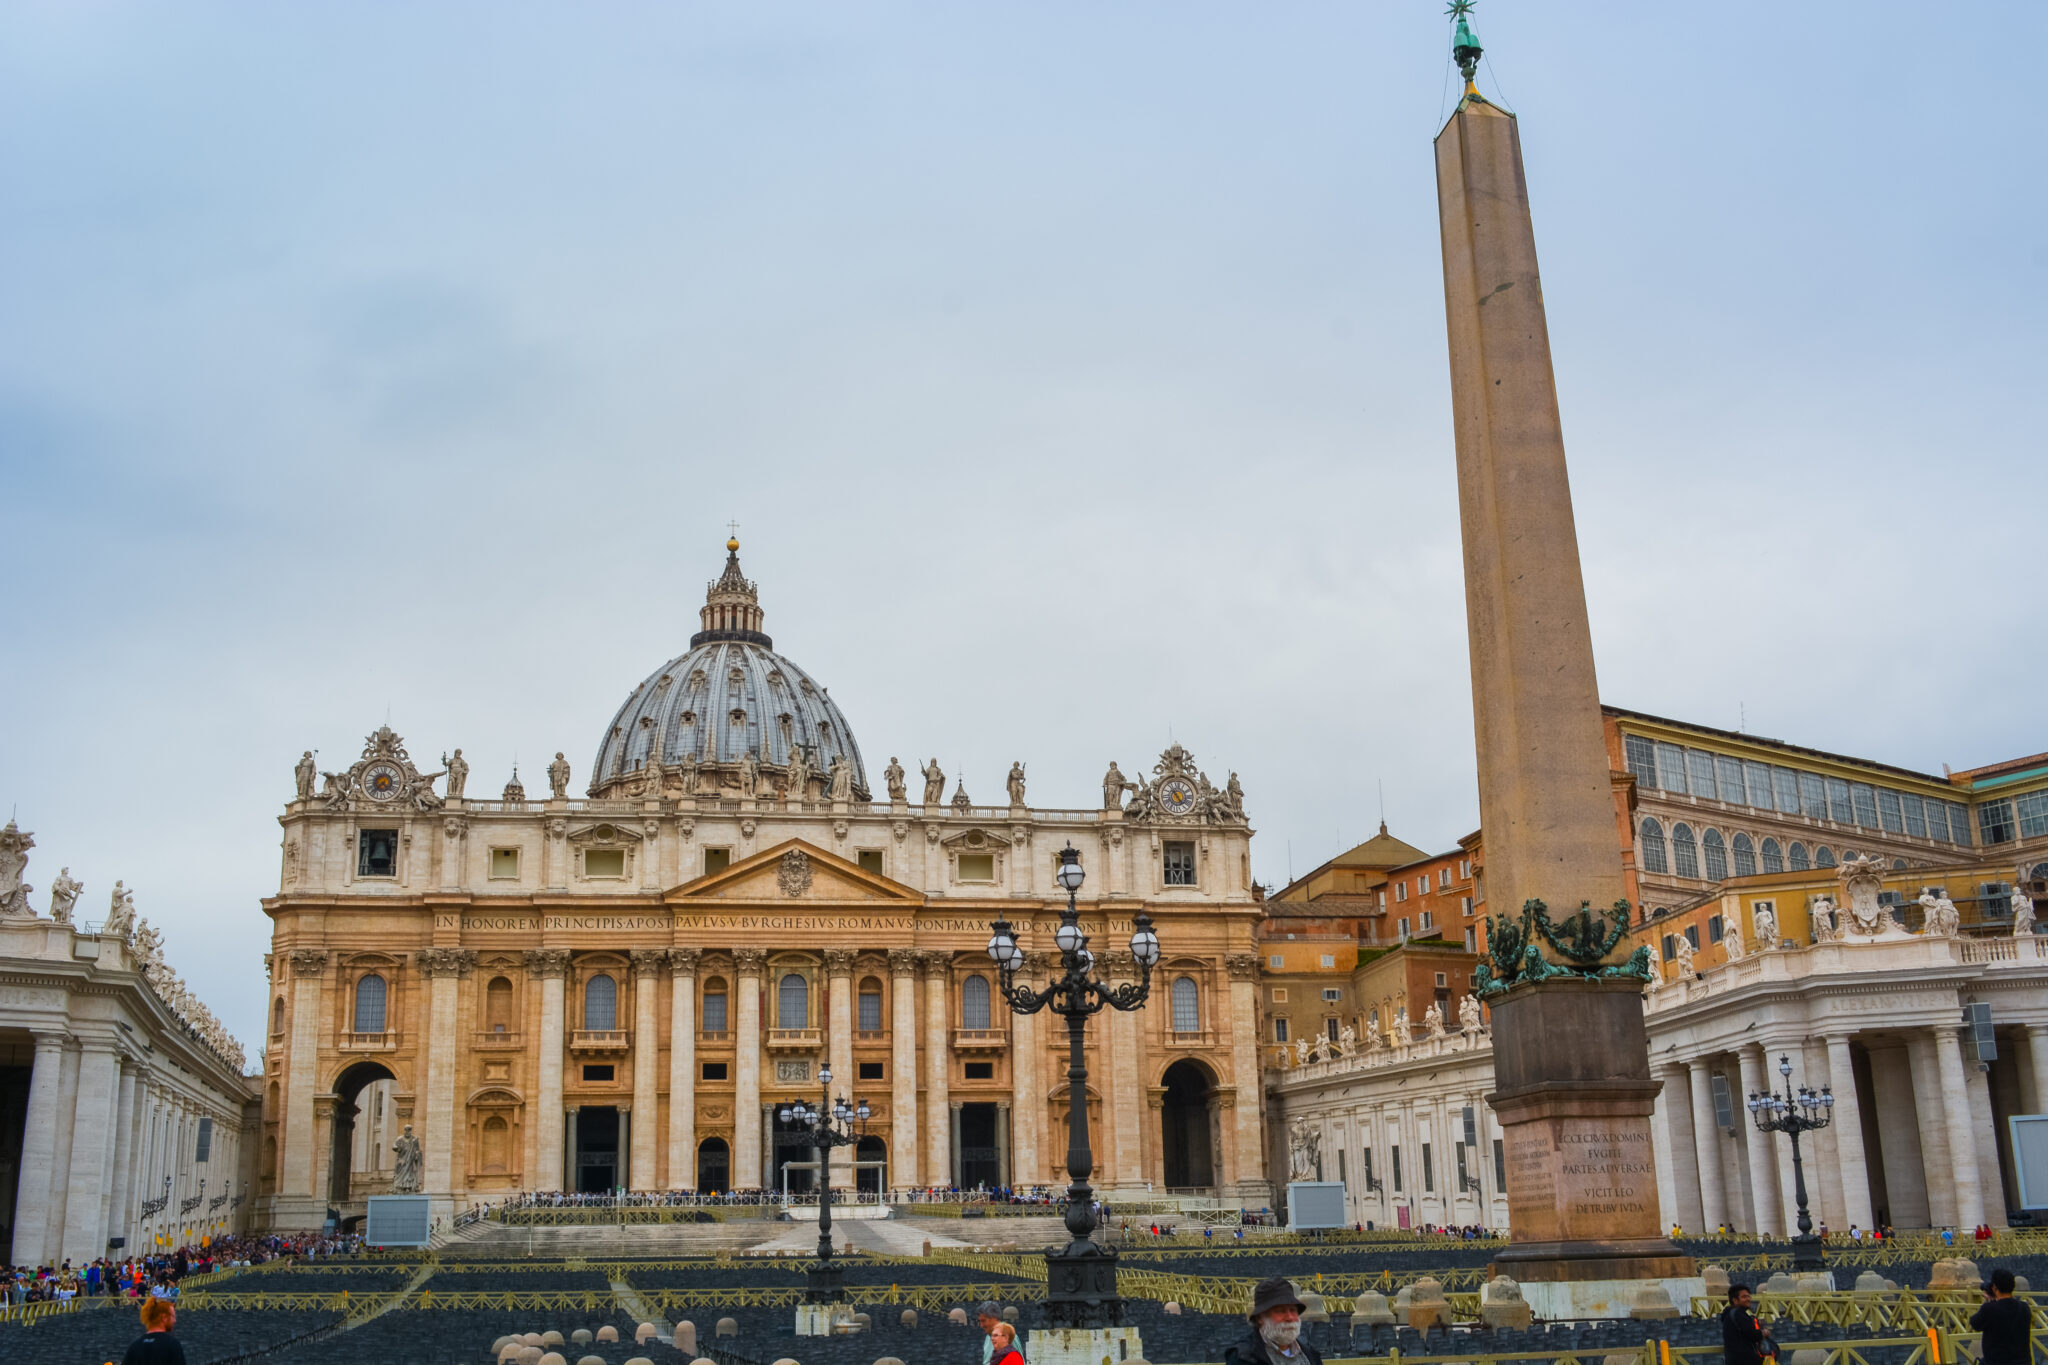 DSC 0110 2 scaled - Museus do Vaticano e Capela Sistina: Guia para visita